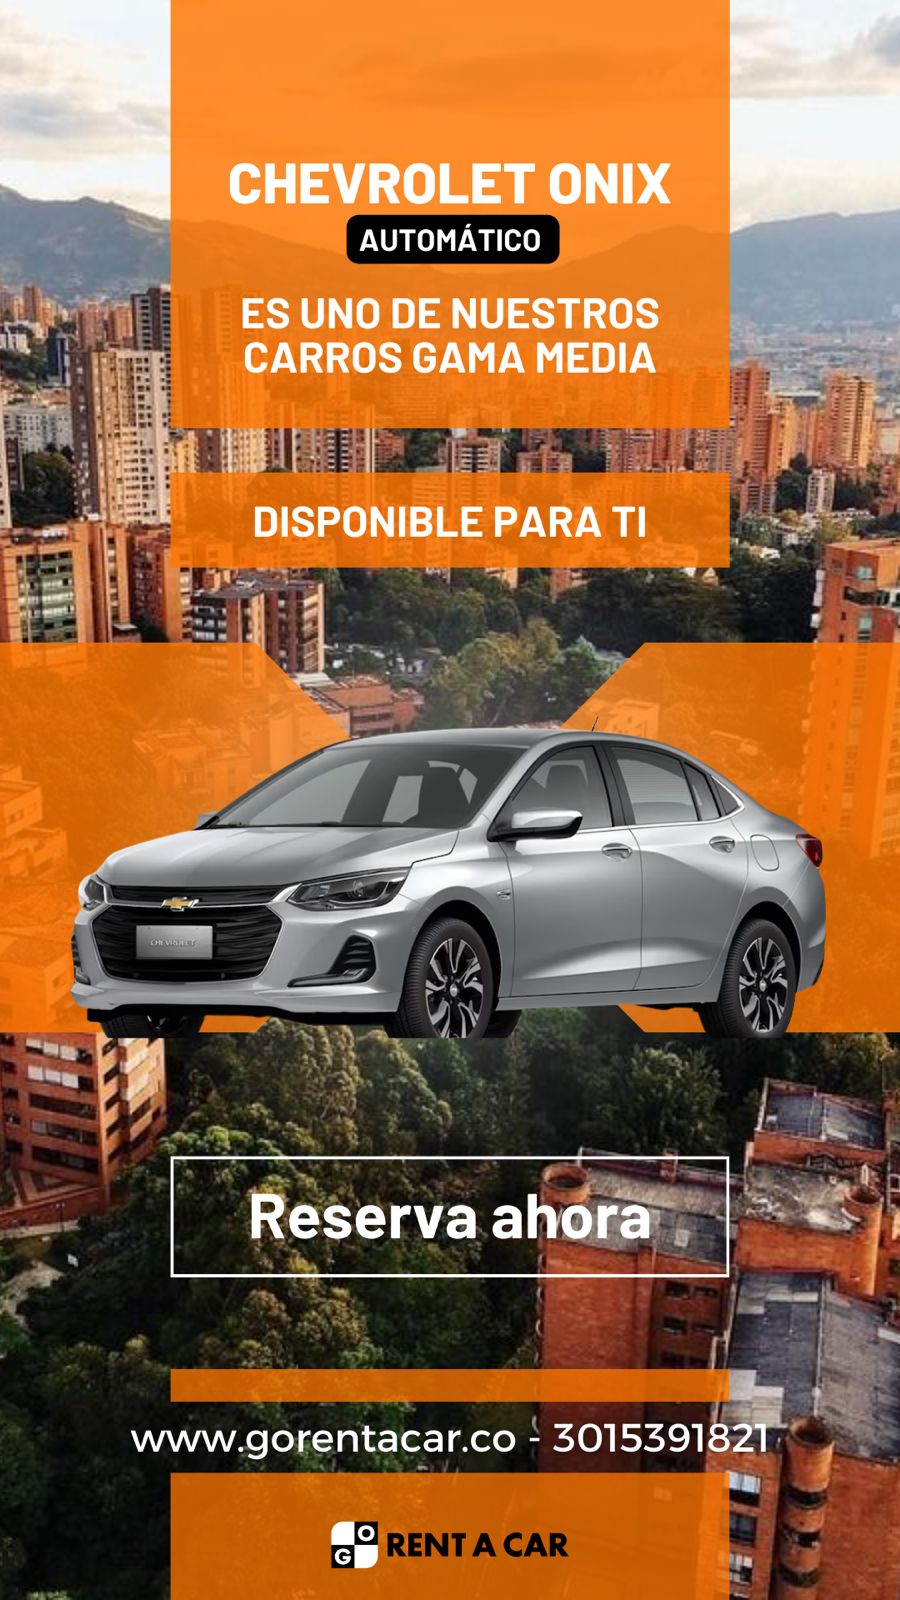 Rent a car Medellín